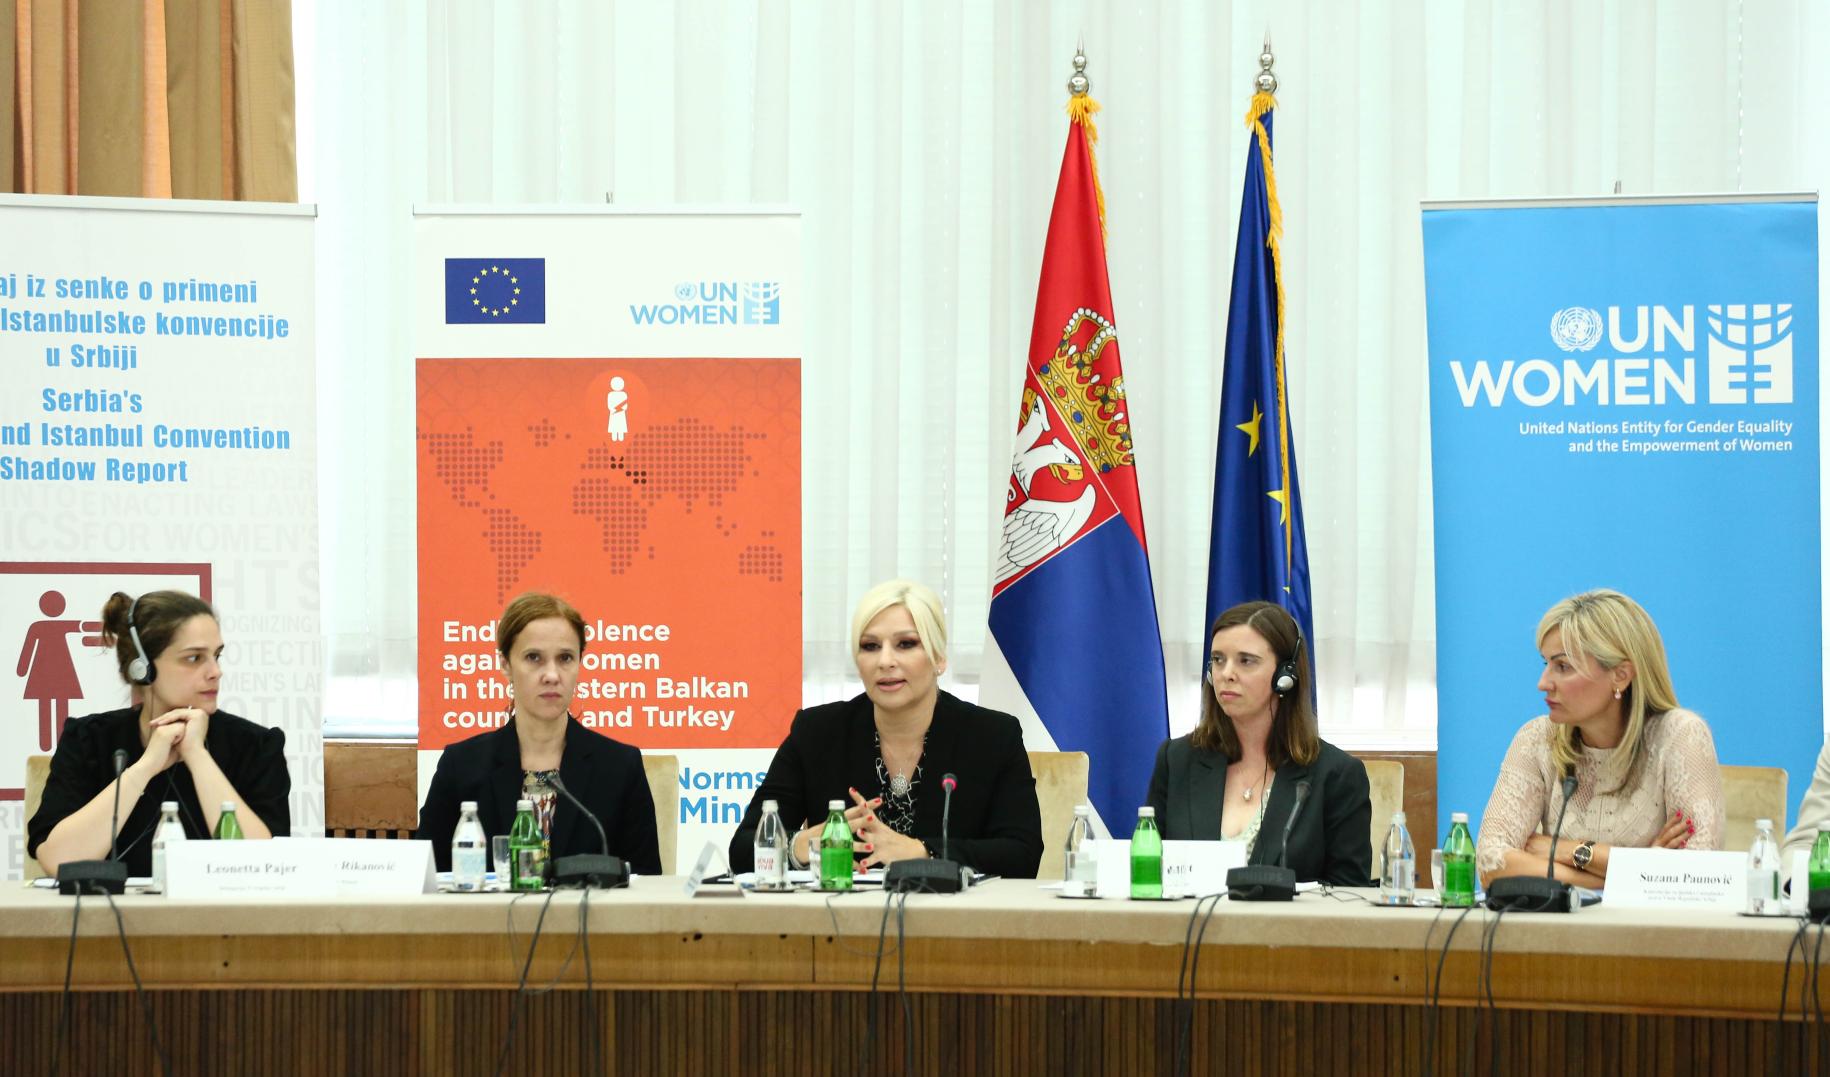 خمس سيدات يعقدن مؤتمرا صحفيا أمام راية وأعلام هيئة الأمم المتحدة للمرأة.